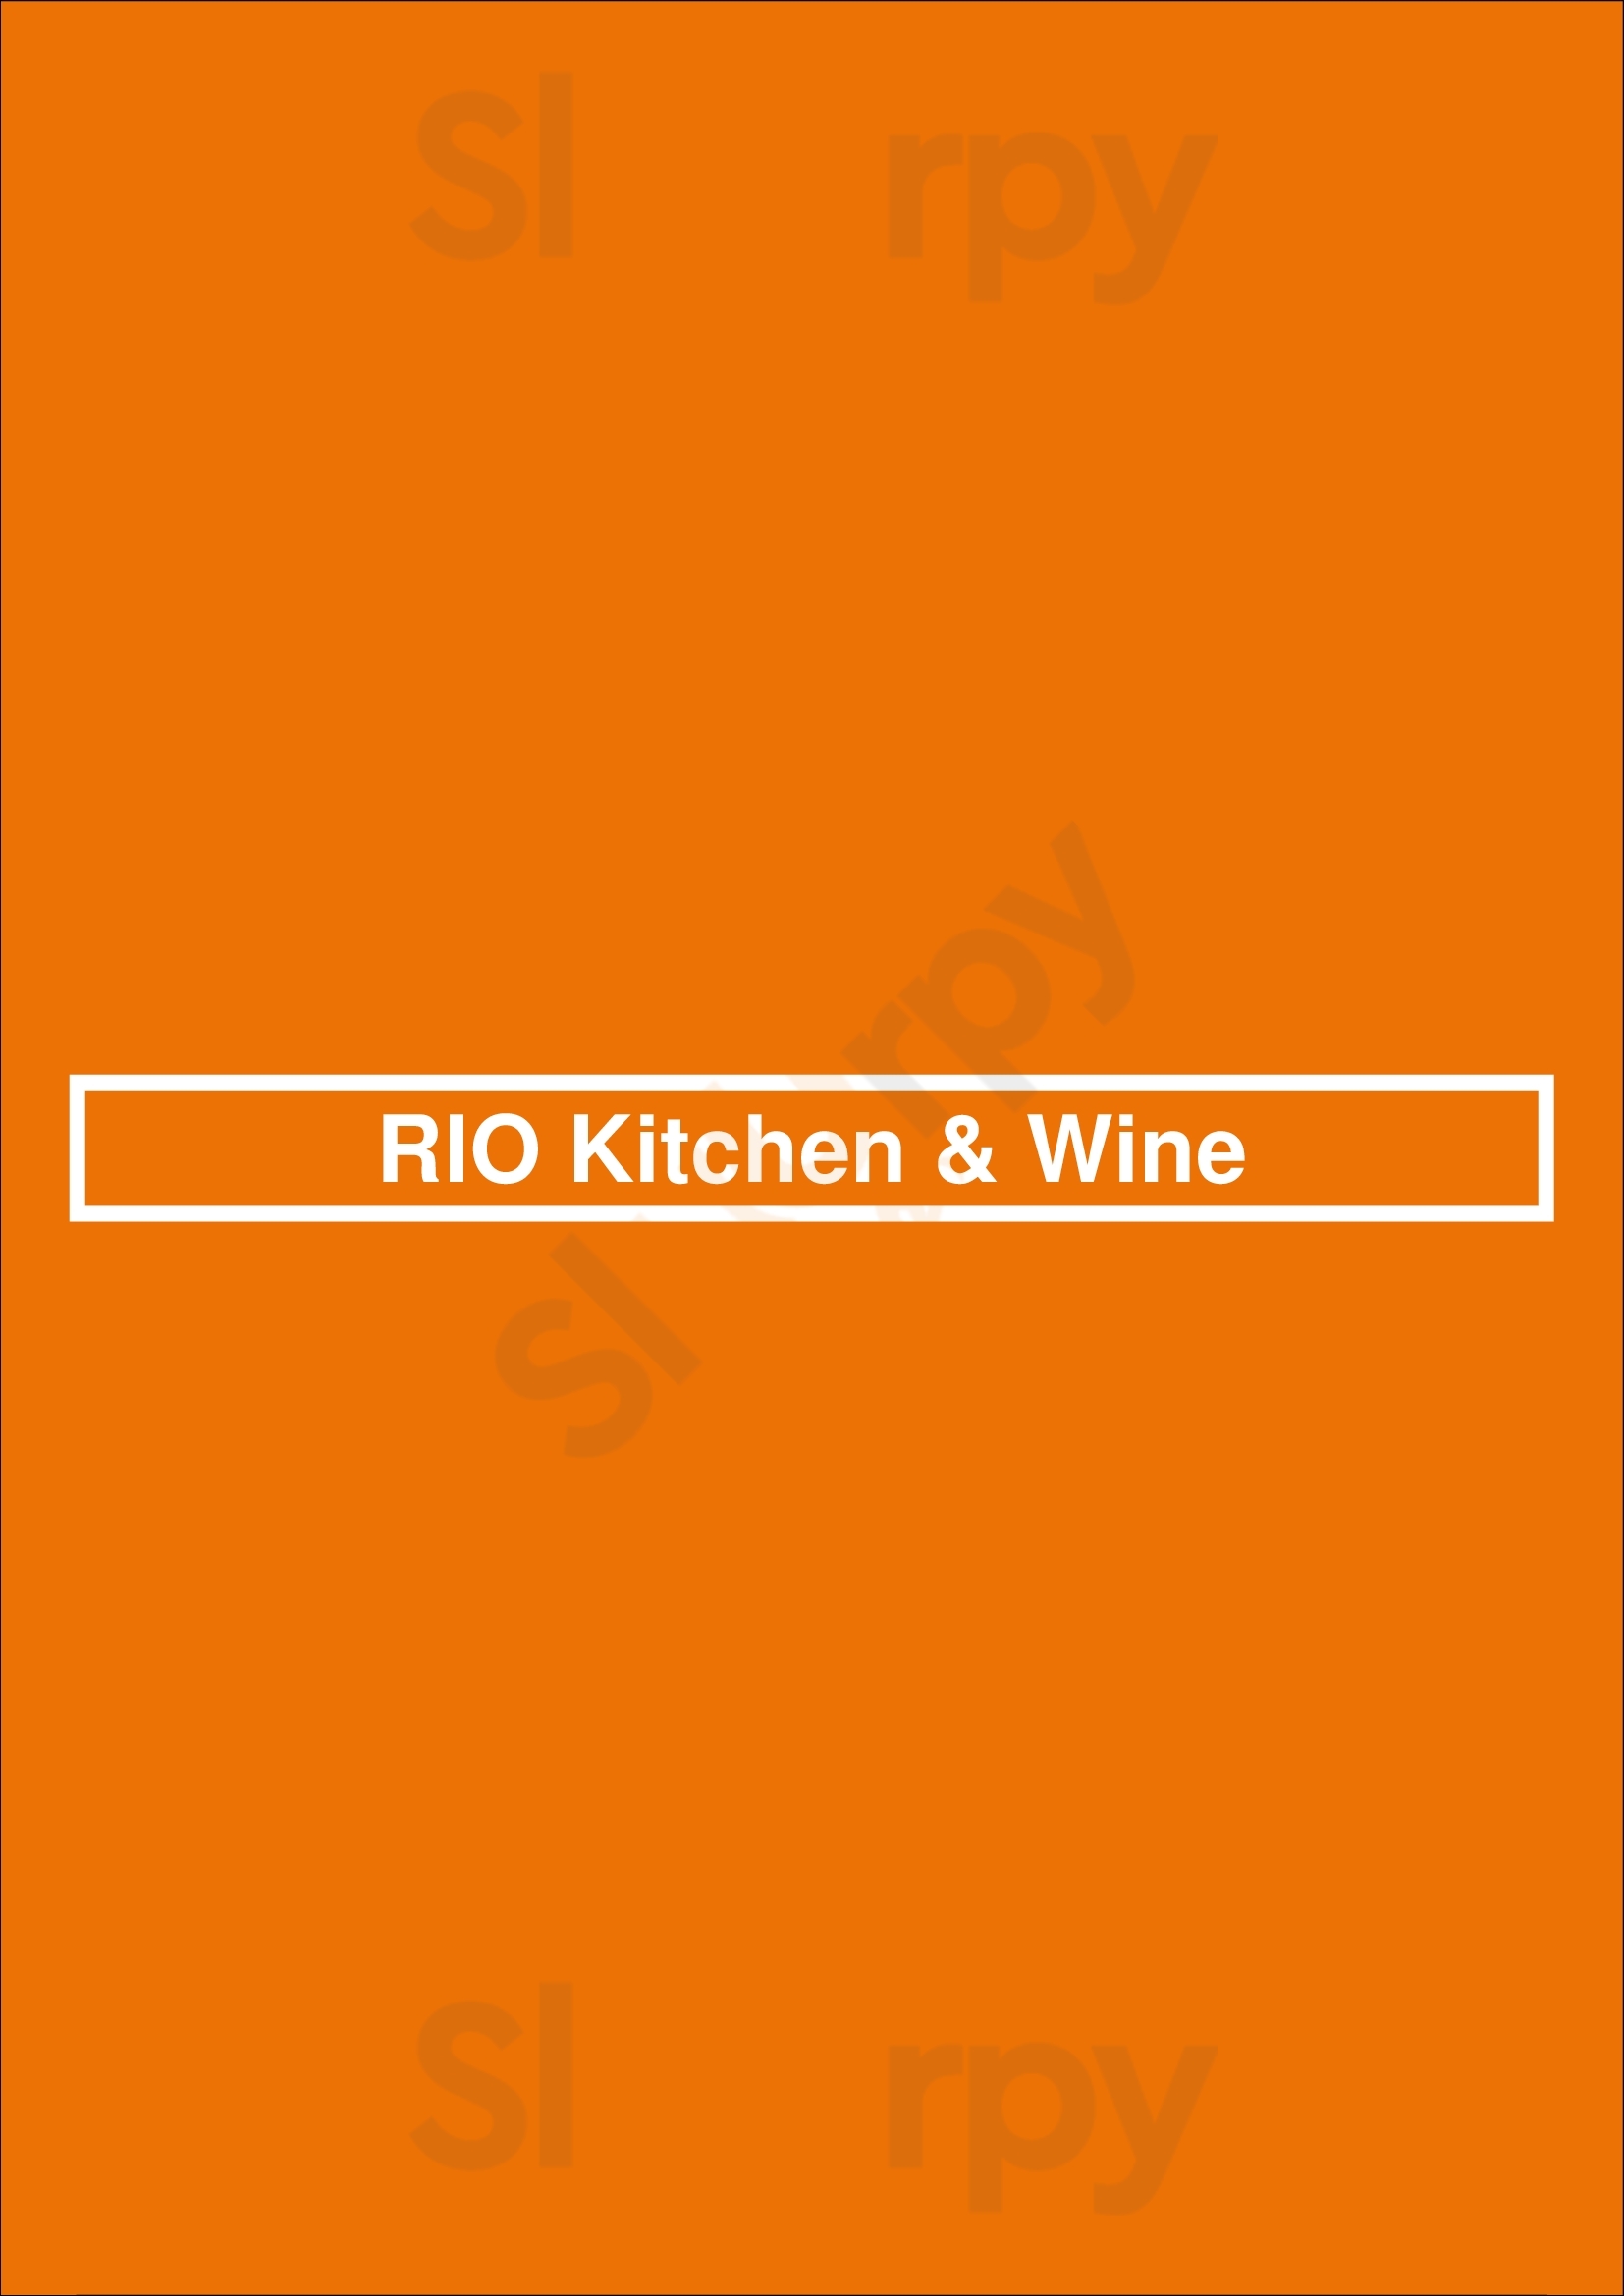 Rio Kitchen & Wine Brooklyn Menu - 1